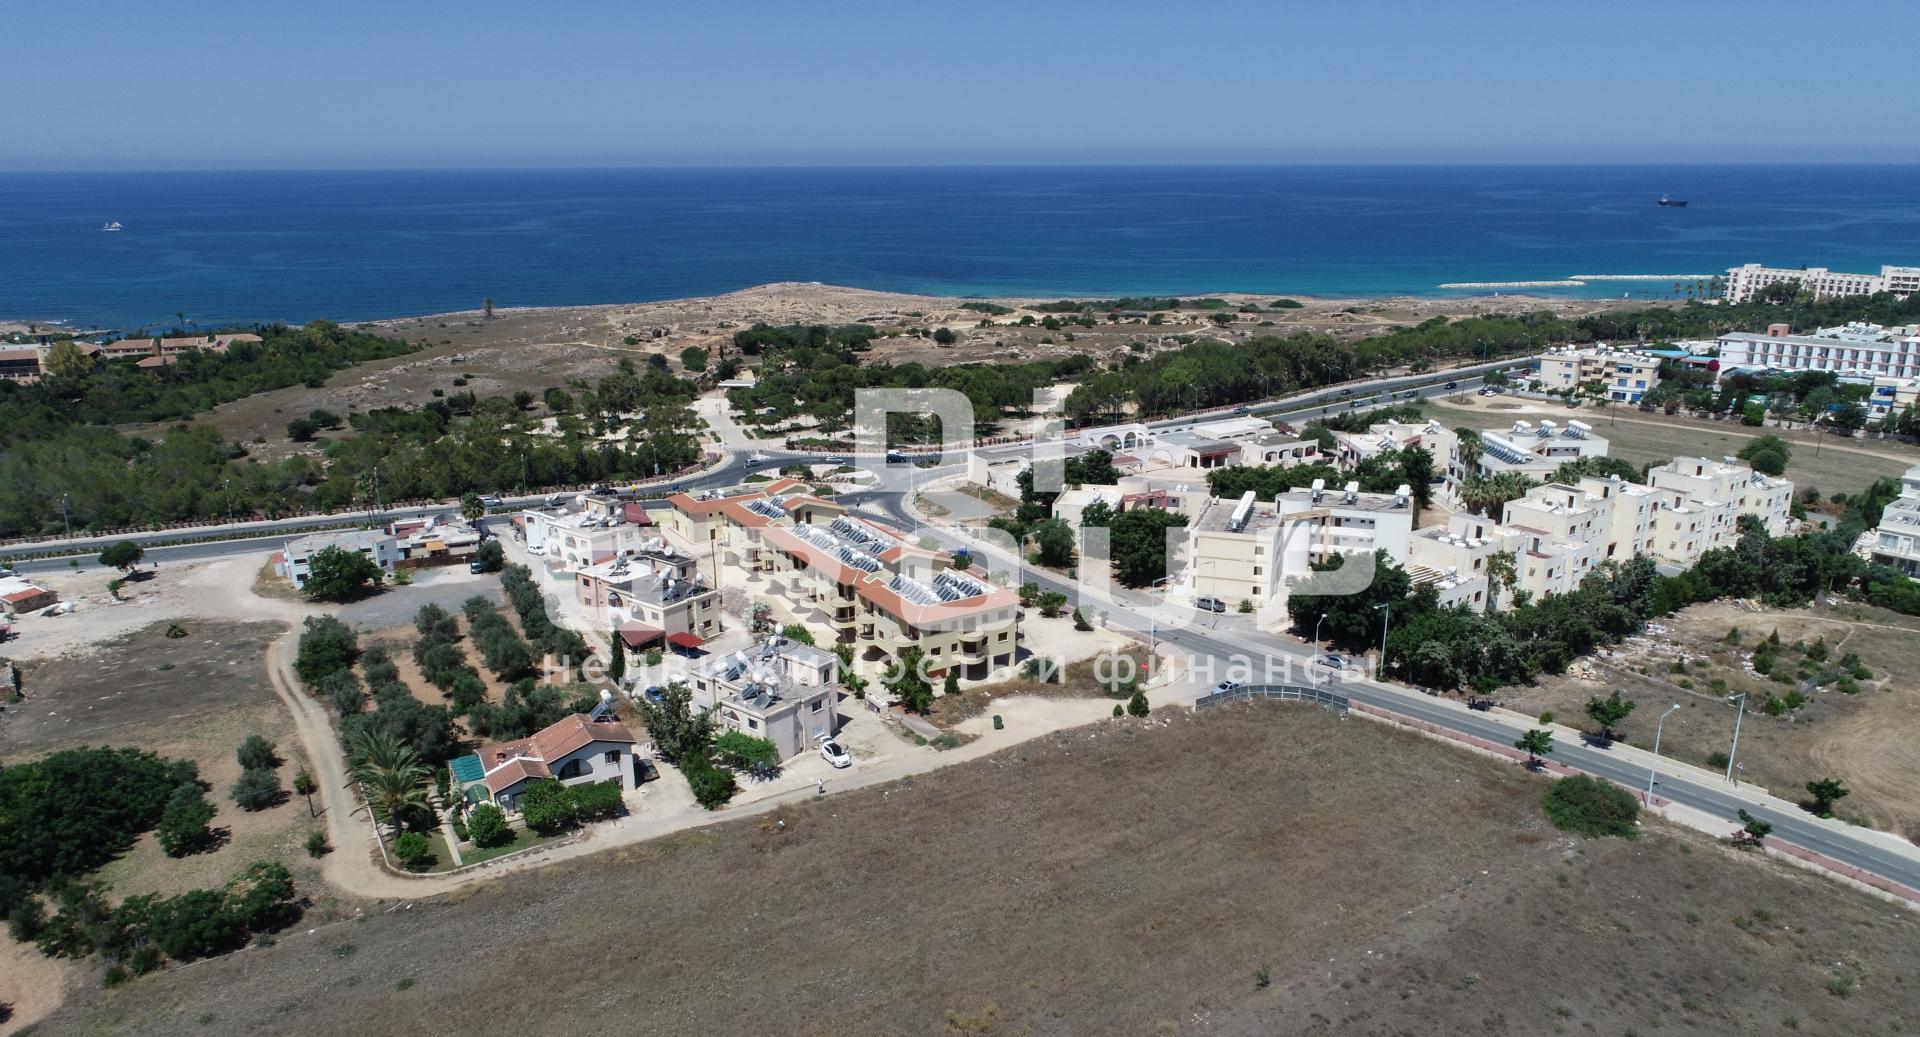 Предлагаем апартаменты в 100 метрах от моря, г. Пафос, Кипр.  Комплекс расположен в нескольких метрах от пляжей... - 8